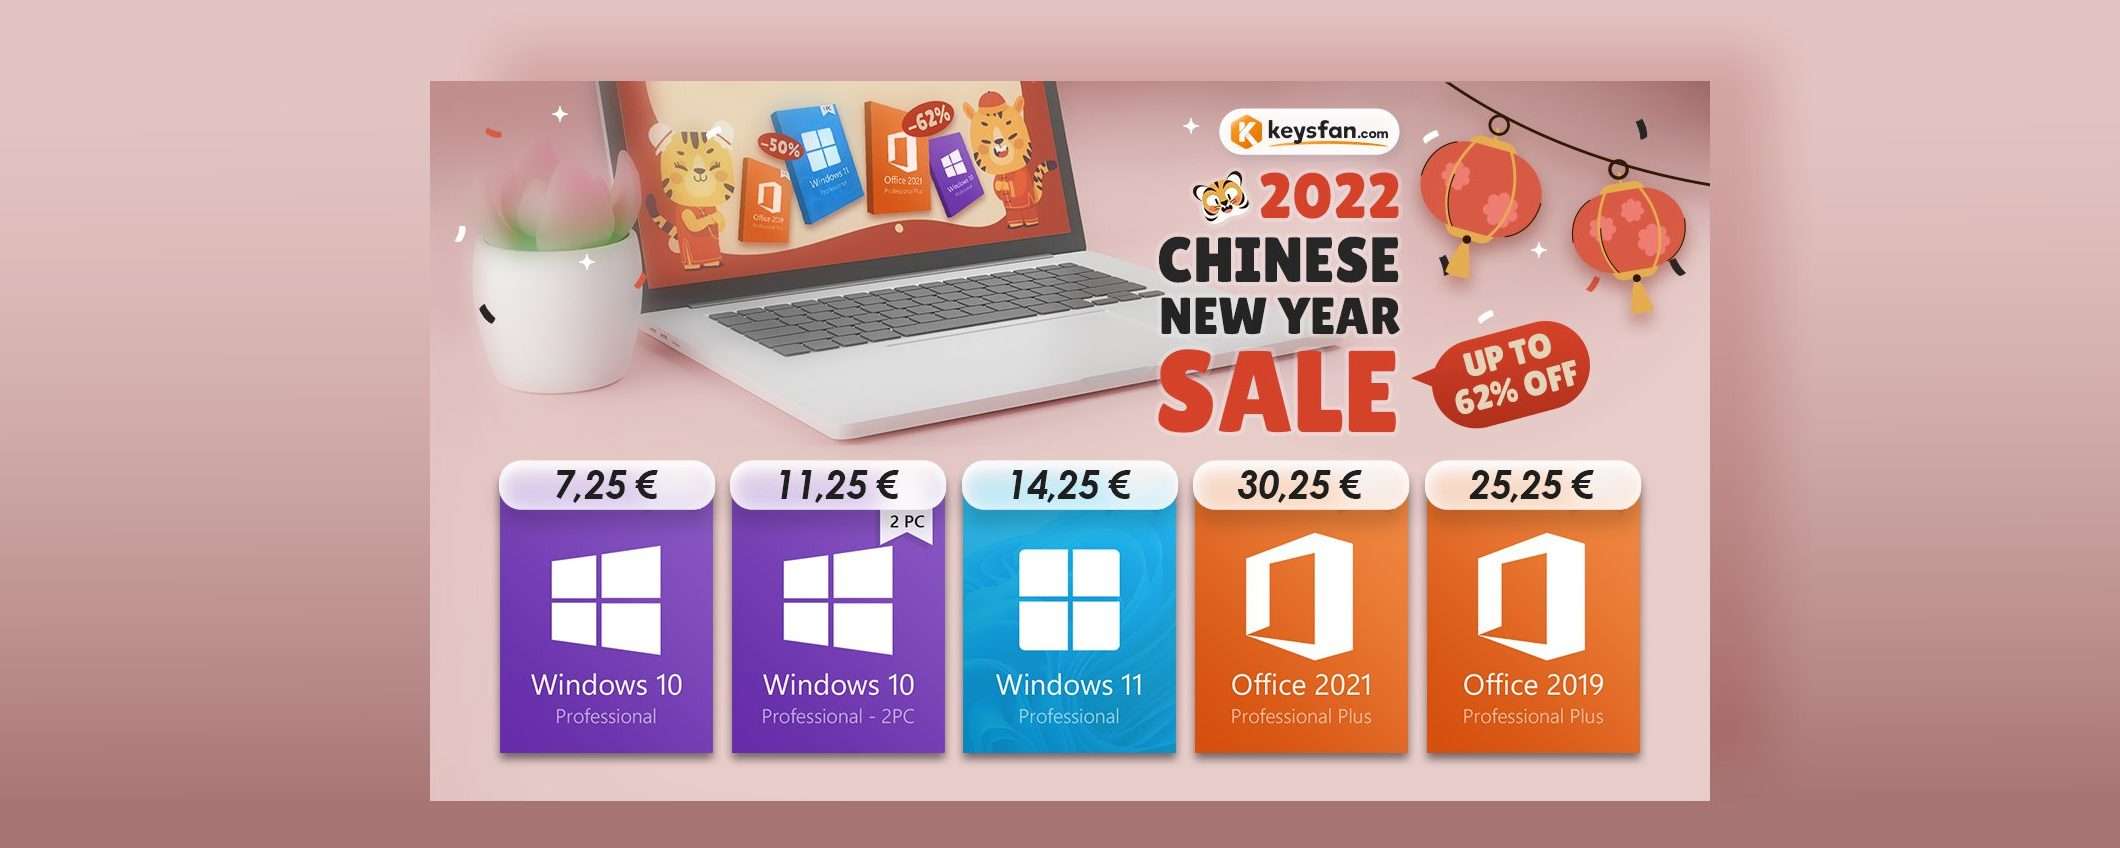 Windows 7€ e Office 2021: 30€ su Keysfan per il capodanno cinese